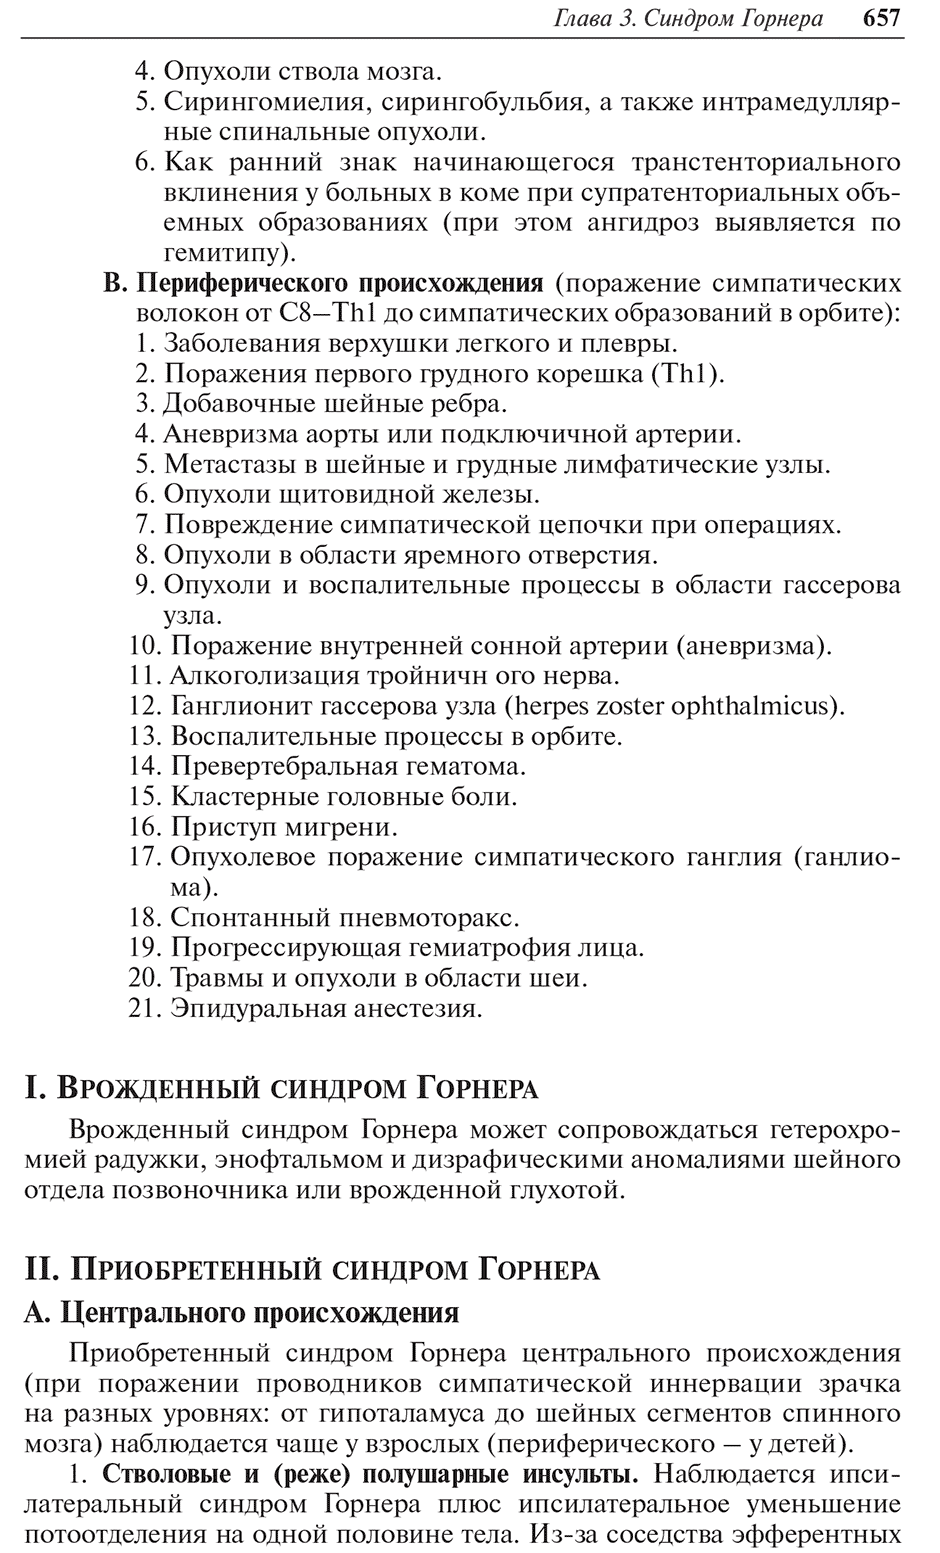 Пример страницы из книги "Неврологические синдромы" - Голубев В. Л., Вейн А. М.